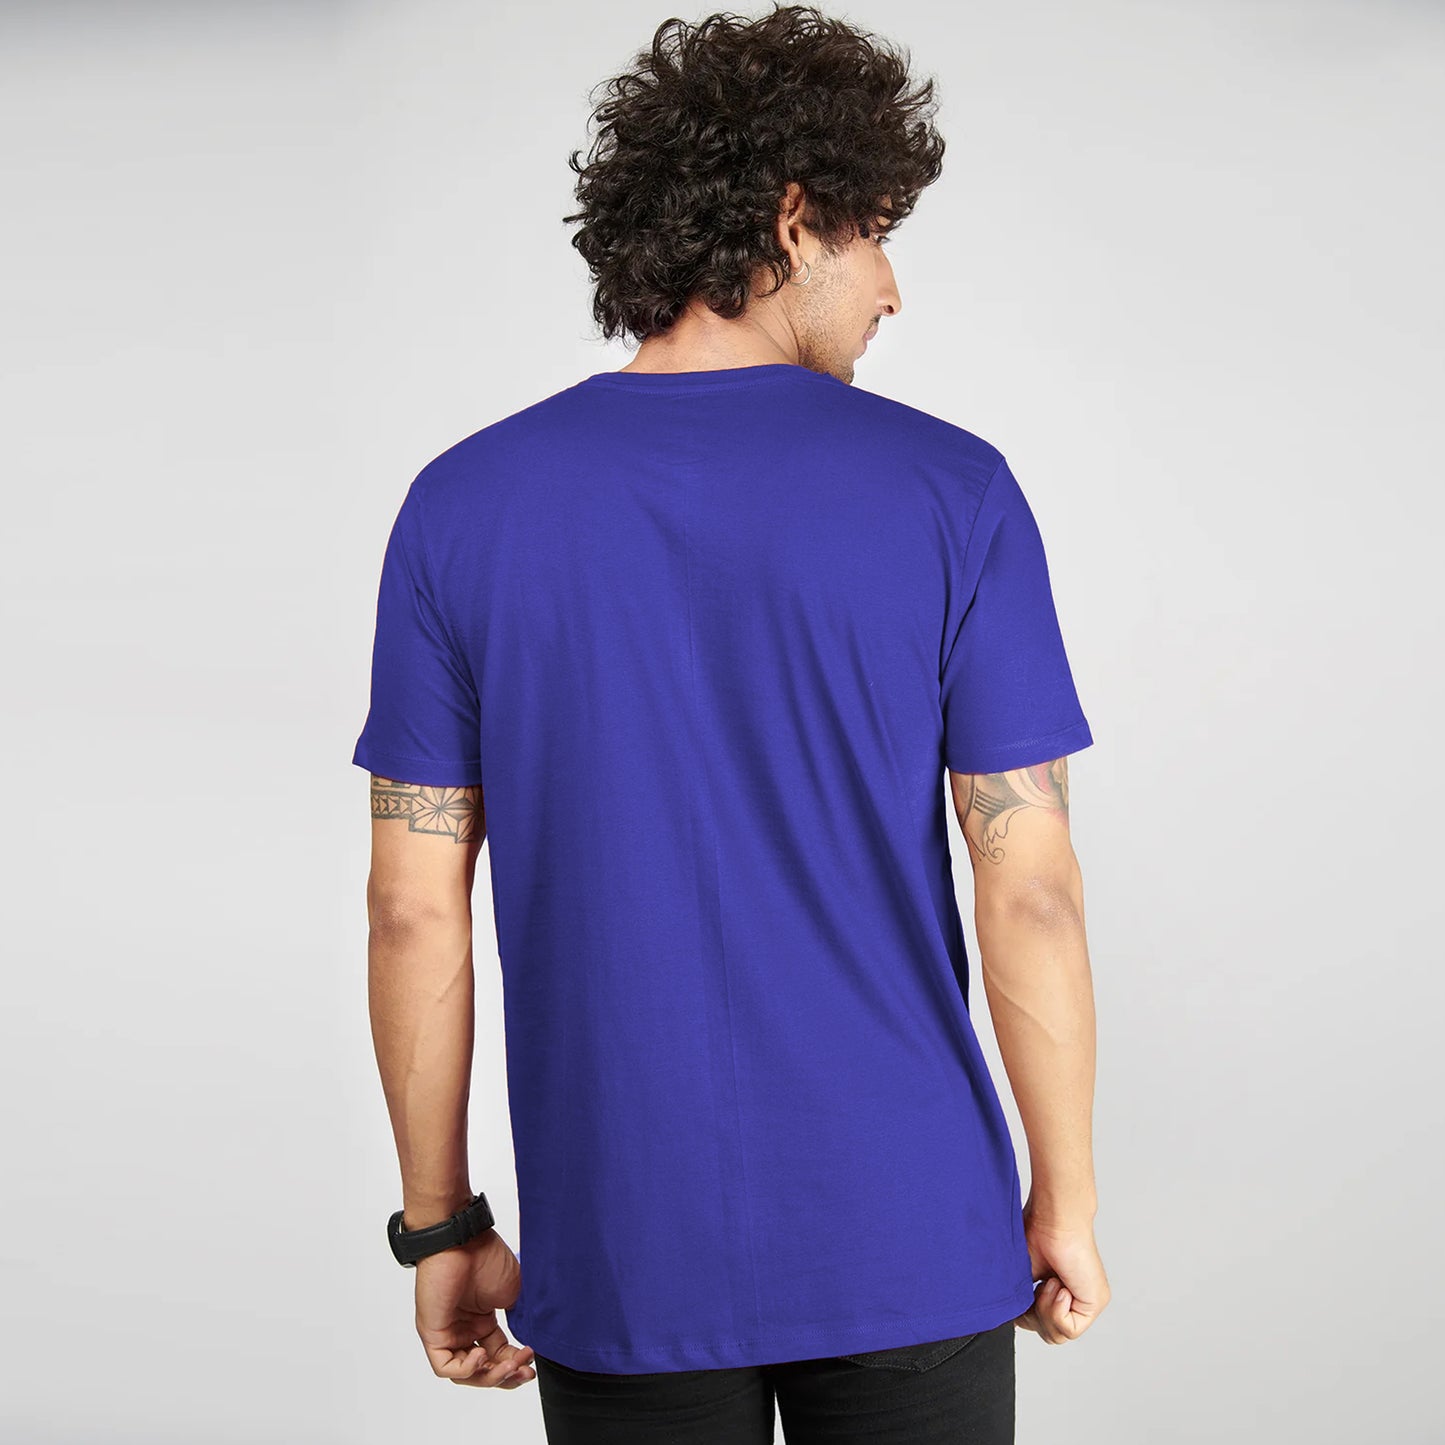 Basic Royal Blue Half Sleeves T-Shirt